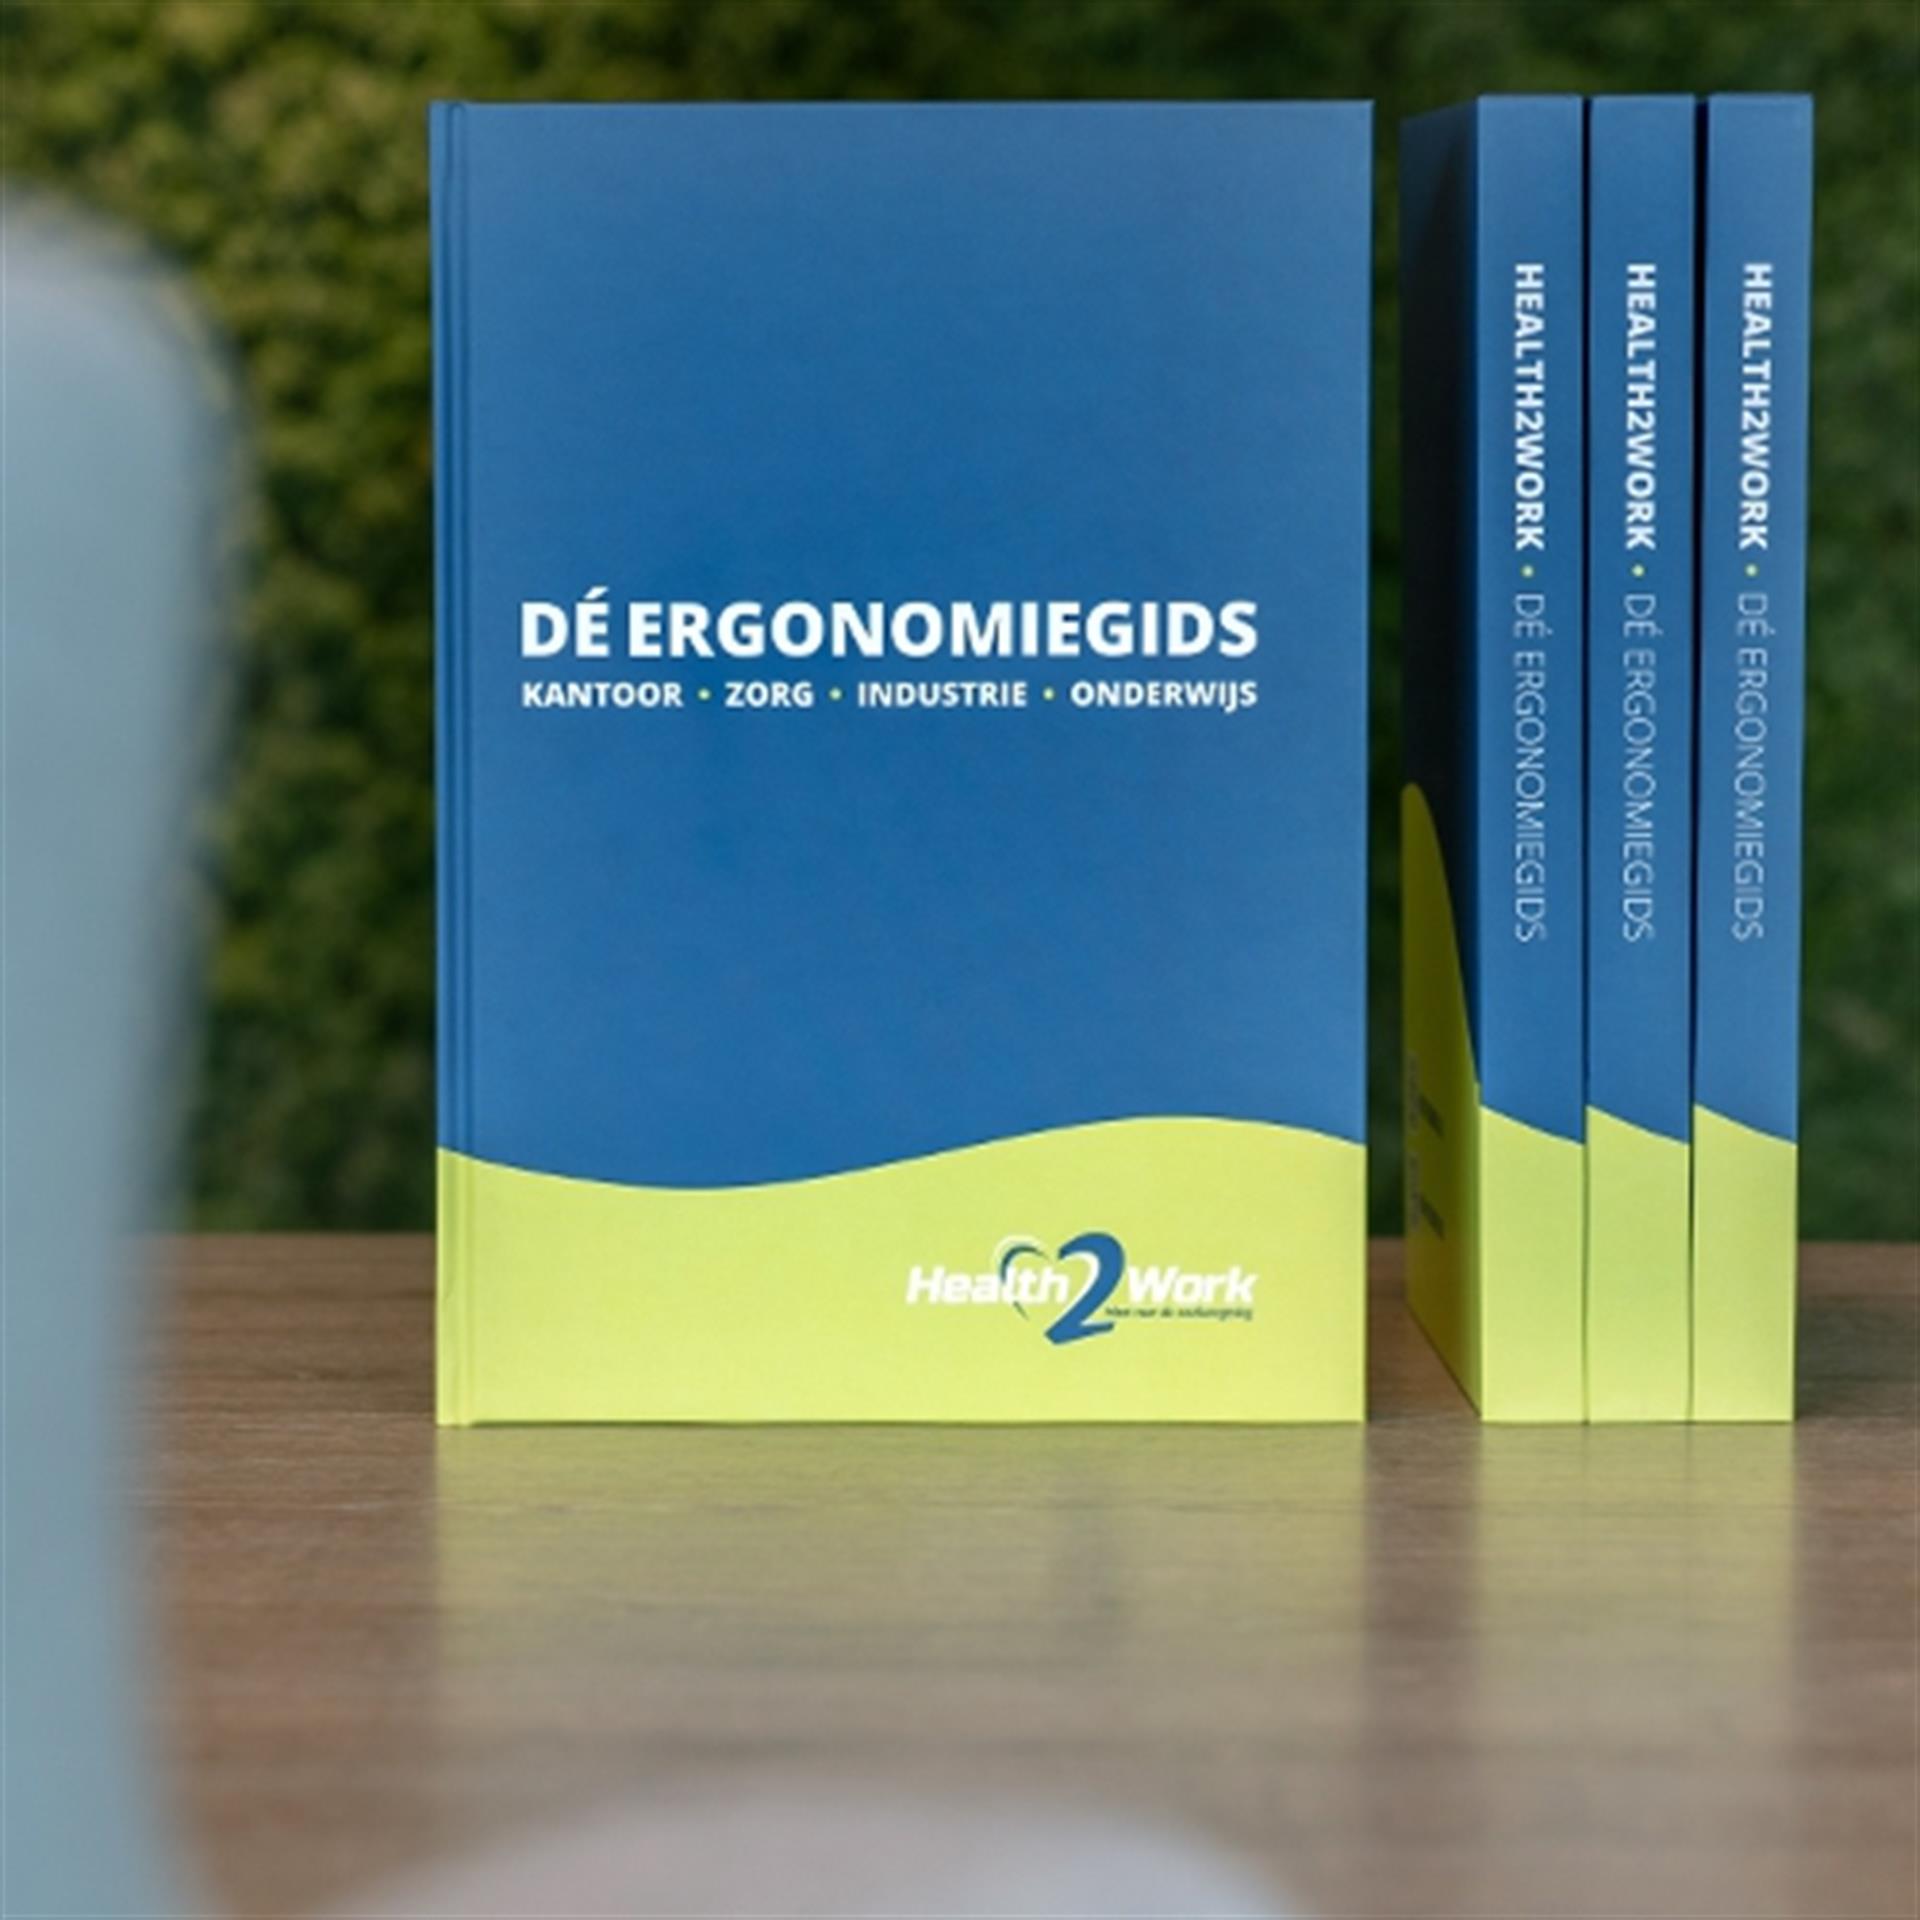 Health2Work lanceert vijfde editie Ergonomiegids: dé encyclopedie voor ergonomie